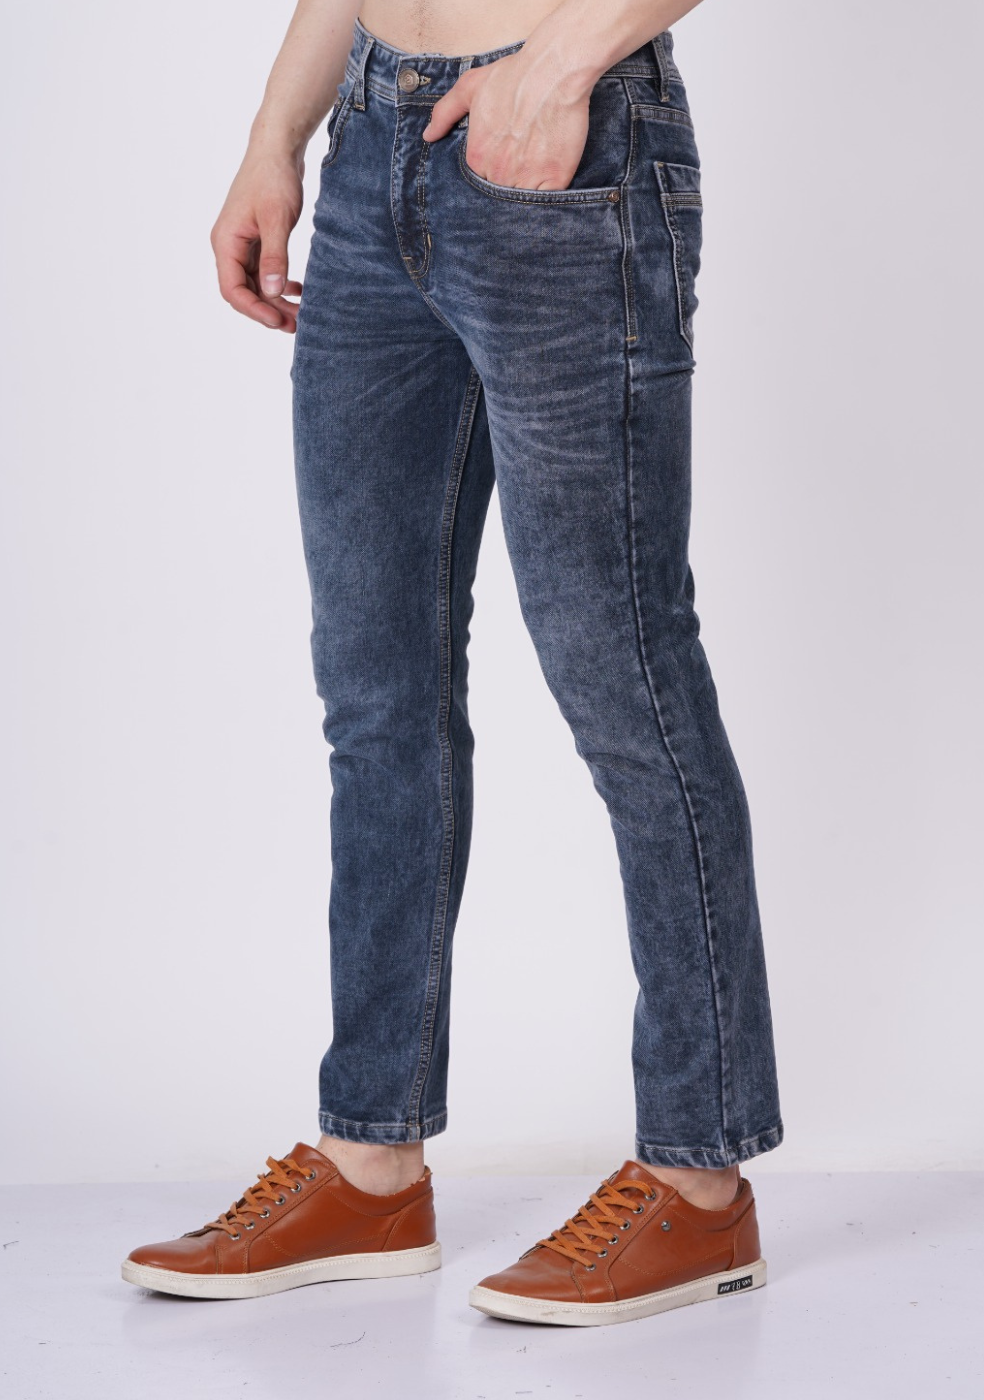 men's gray denim jeans